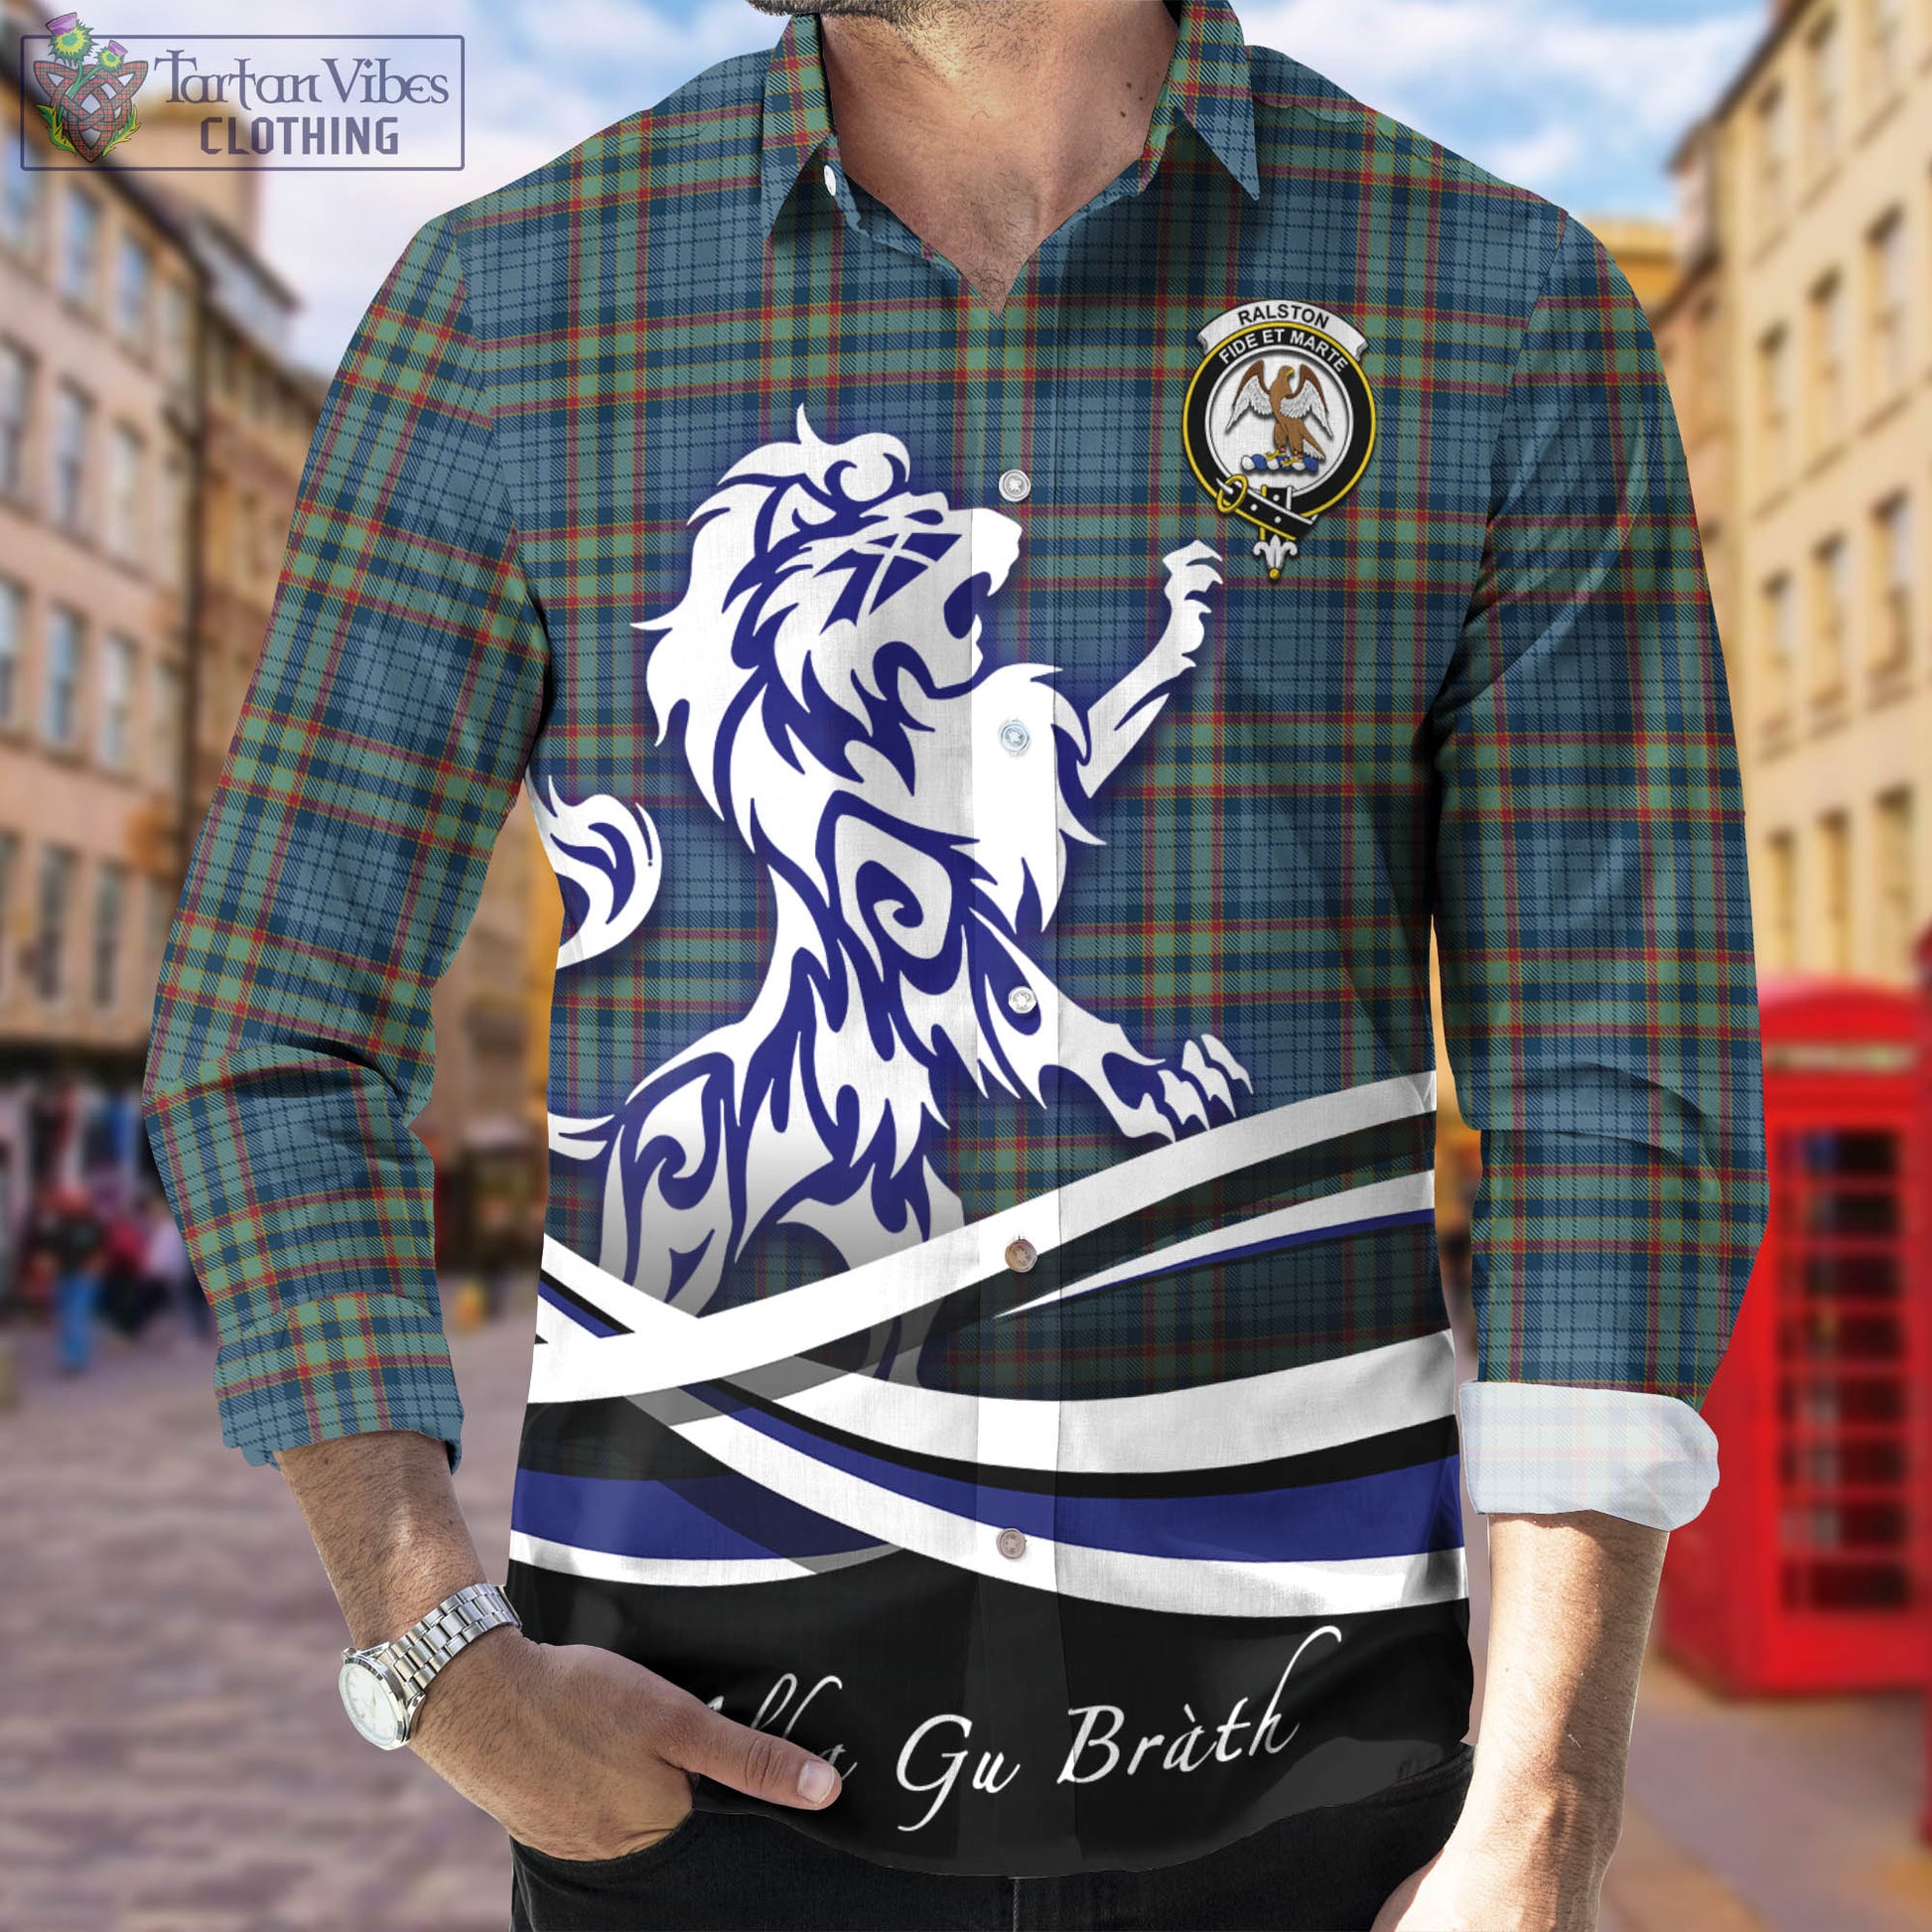 ralston-uk-tartan-long-sleeve-button-up-shirt-with-alba-gu-brath-regal-lion-emblem